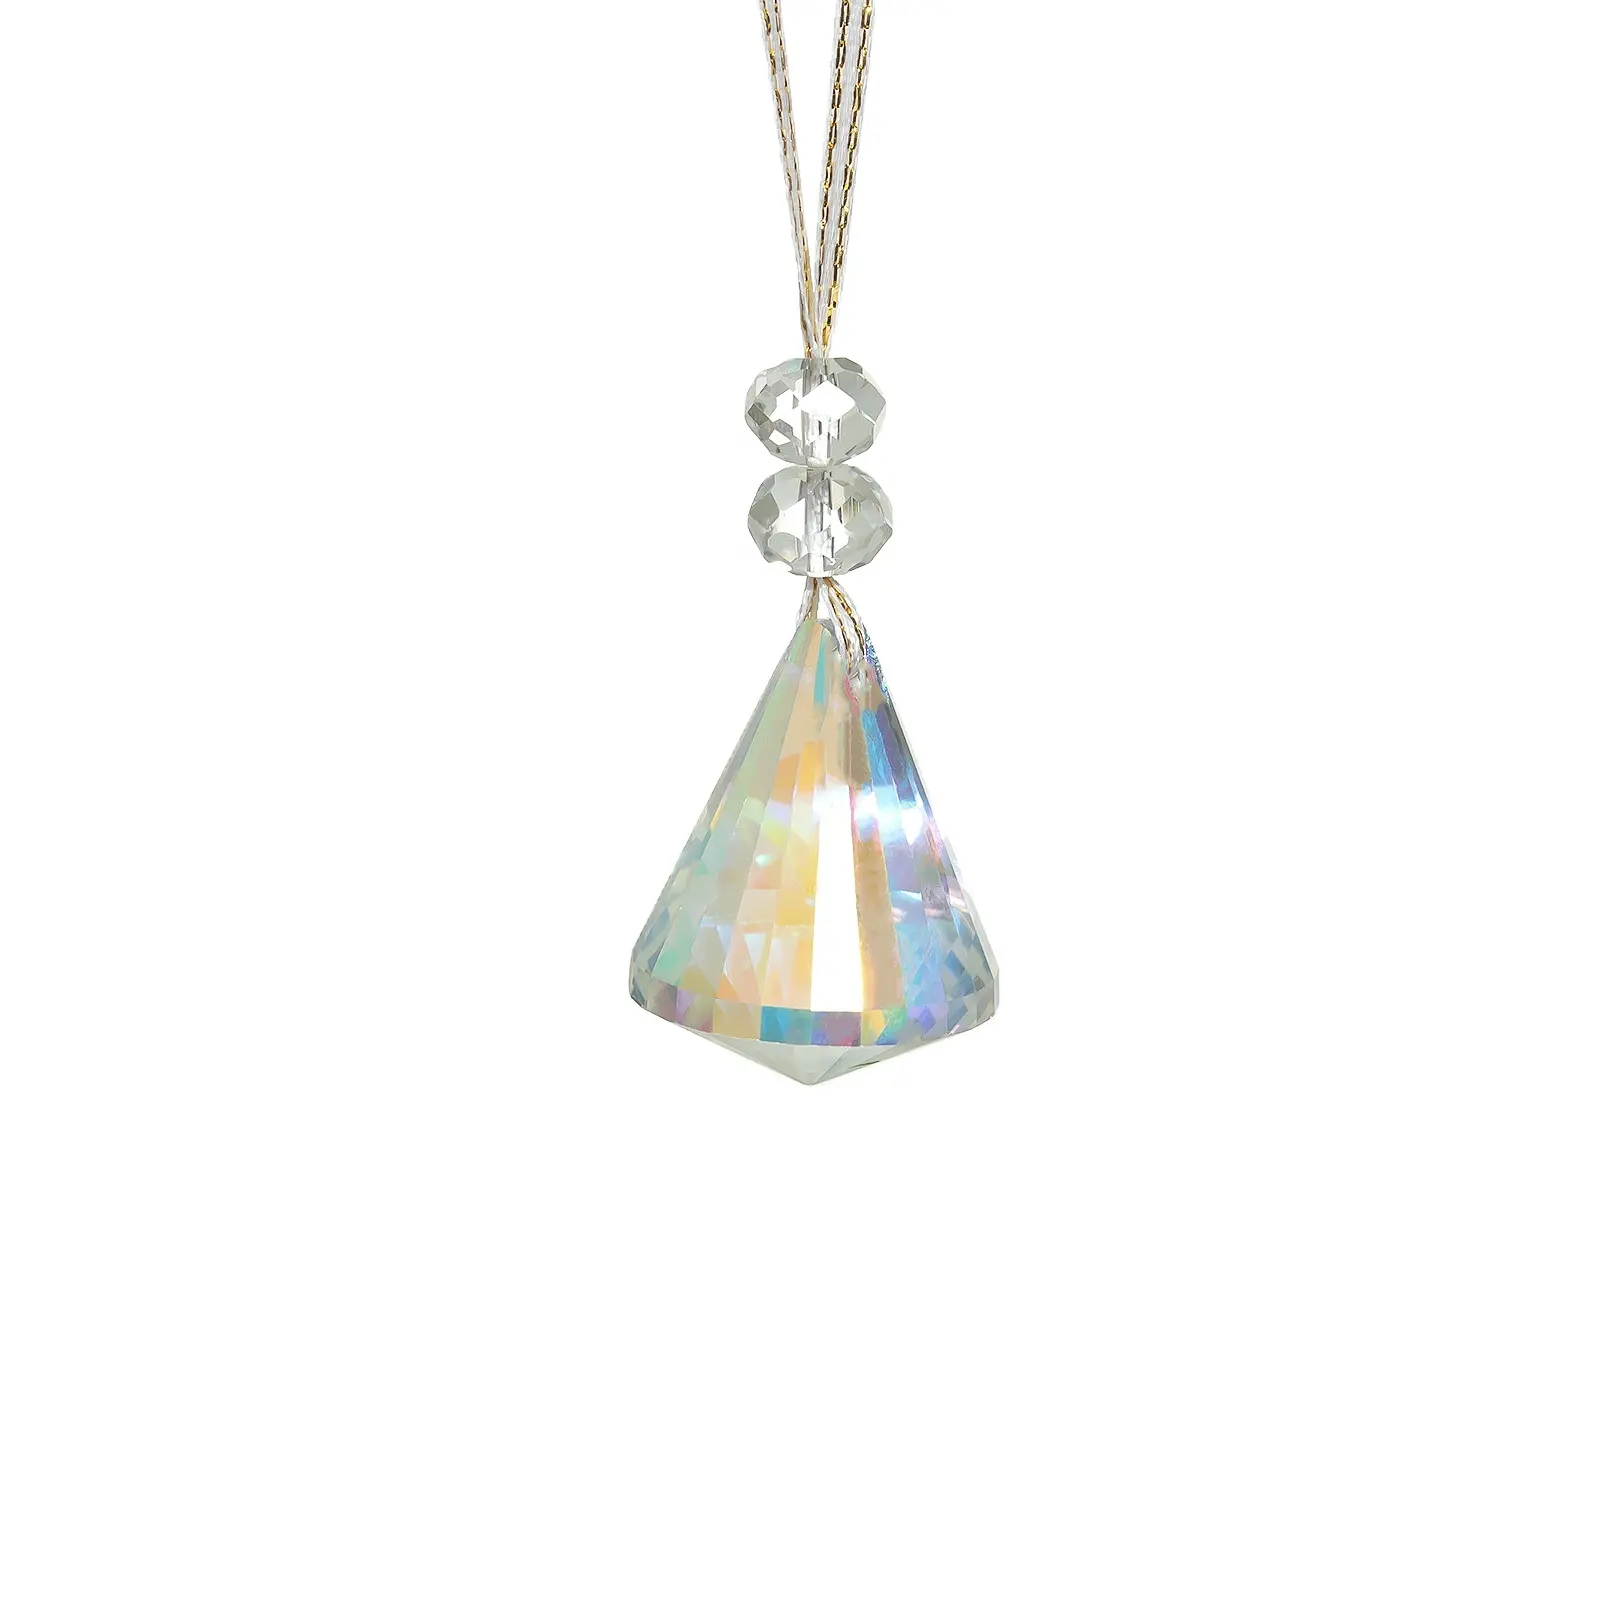 50mm Kristall hängende Kristalle Perlen für Kronleuchter Hochzeitsdekoration, Kristall Weihnachtsbaum Dekoration